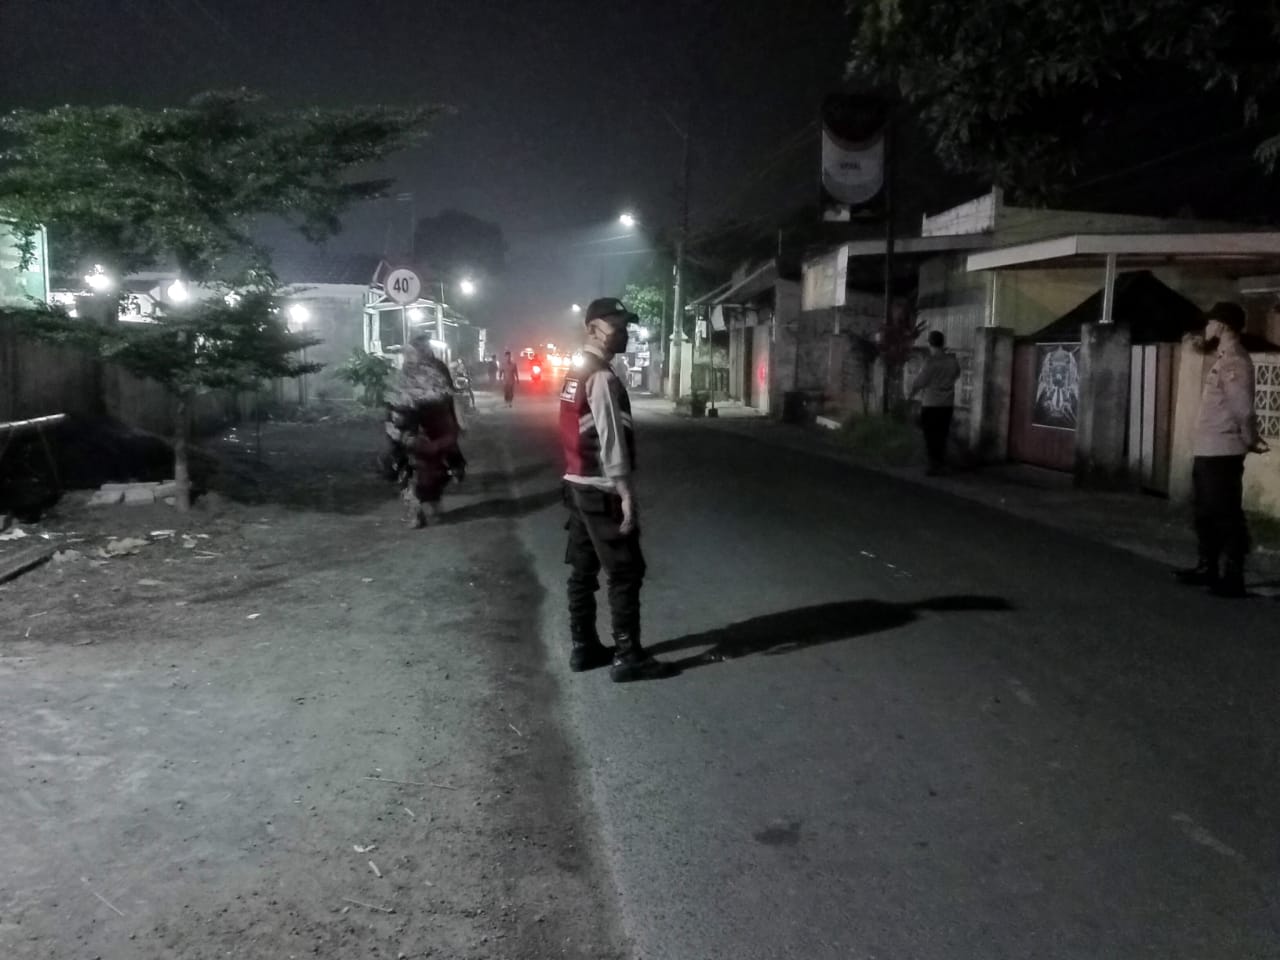 Pengamanan Ibadah Sholat Tarawih di Kuripan, Polisi Imbau Pemuda Jangan Nyalakan Petasan